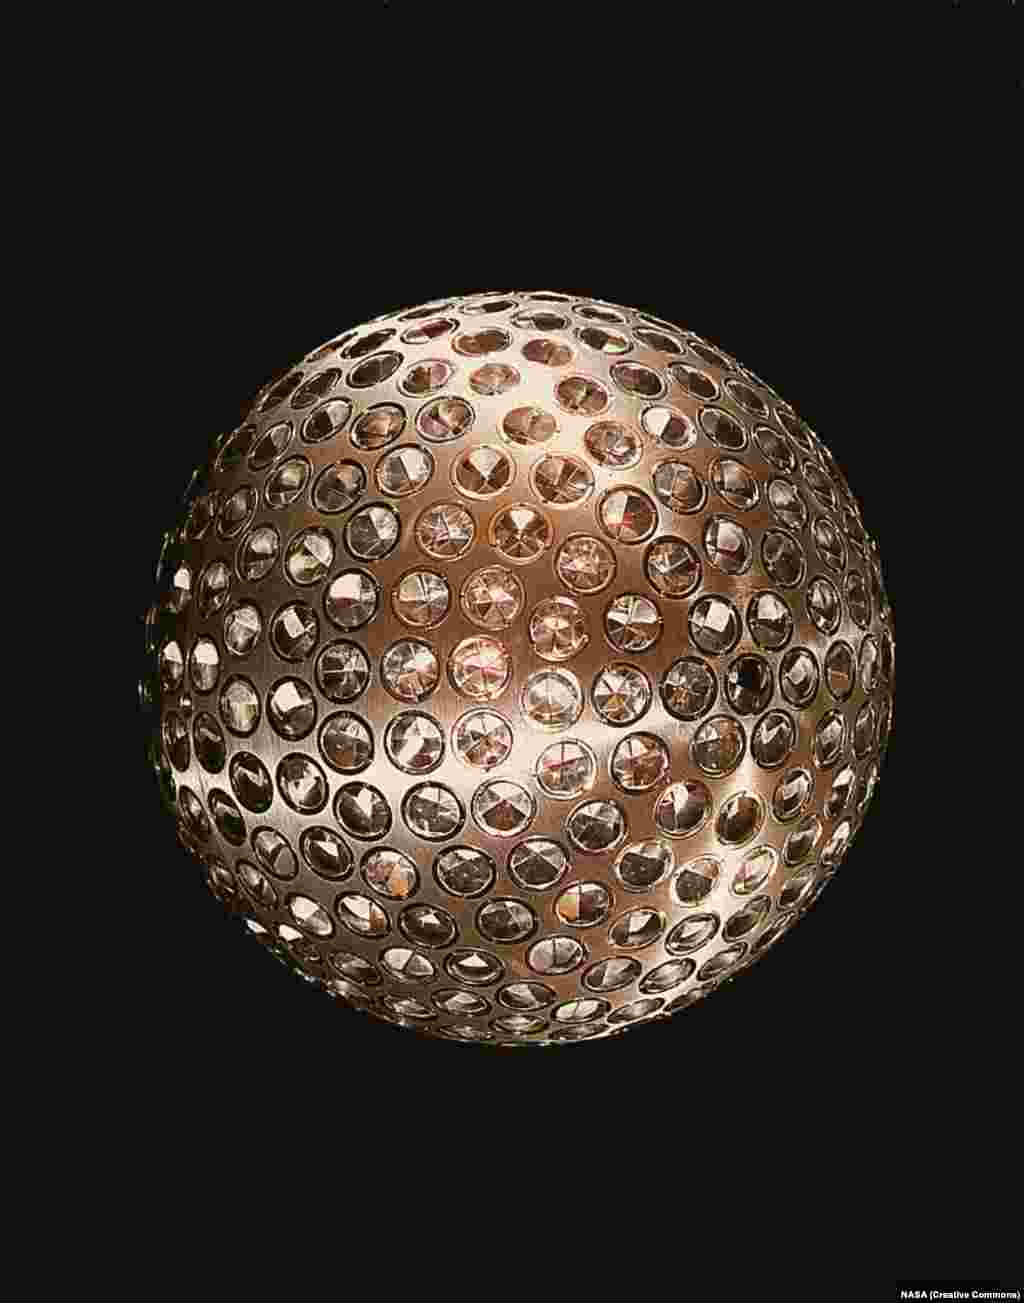 LAGEOS 1 называют космическим диско-шаром НАСА. Он был запущен в 1976 году. 400-килограммовая алюминиевая и латунная сфера усыпана рефлекторами, которые позволяют лазерным лучам с Земли точно определять смещение тектонических плит и точную форму планеты.&nbsp; &nbsp;&nbsp;